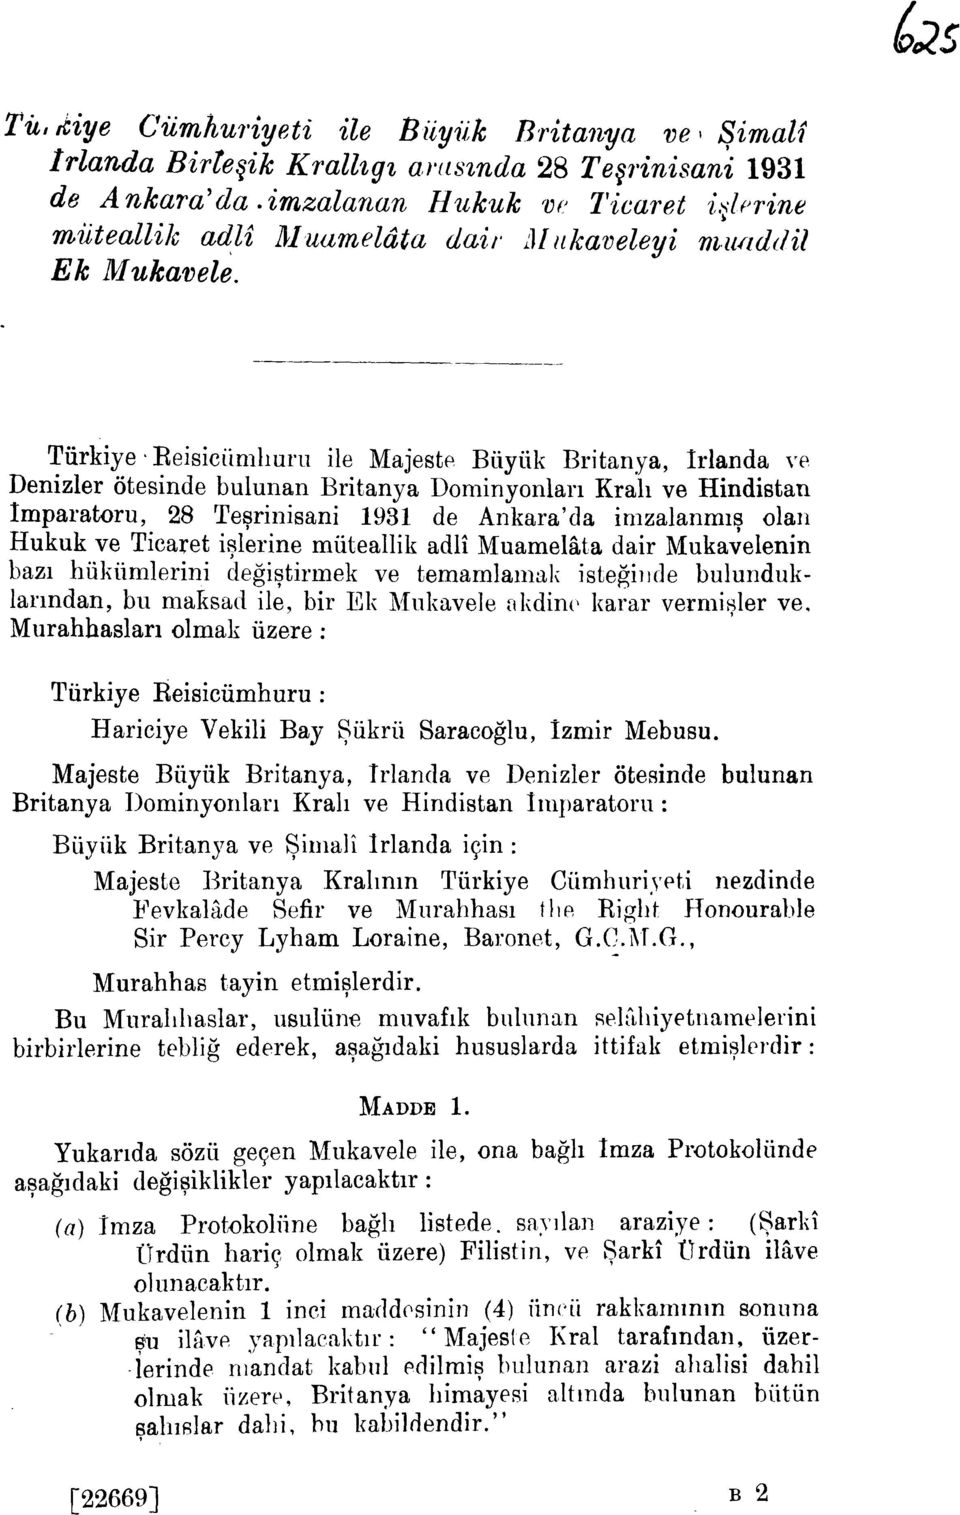 Turkiye Reisiciinlliuru He Majeste Buyiik Britanya, Irlanda ve Denizler otesinde bulunan Britanya Dominyonlari Krah ve Hindistan Imparatoru, 28 Tesrinisani 1931 de Ankara' da inlzalanmis olan Hukuk